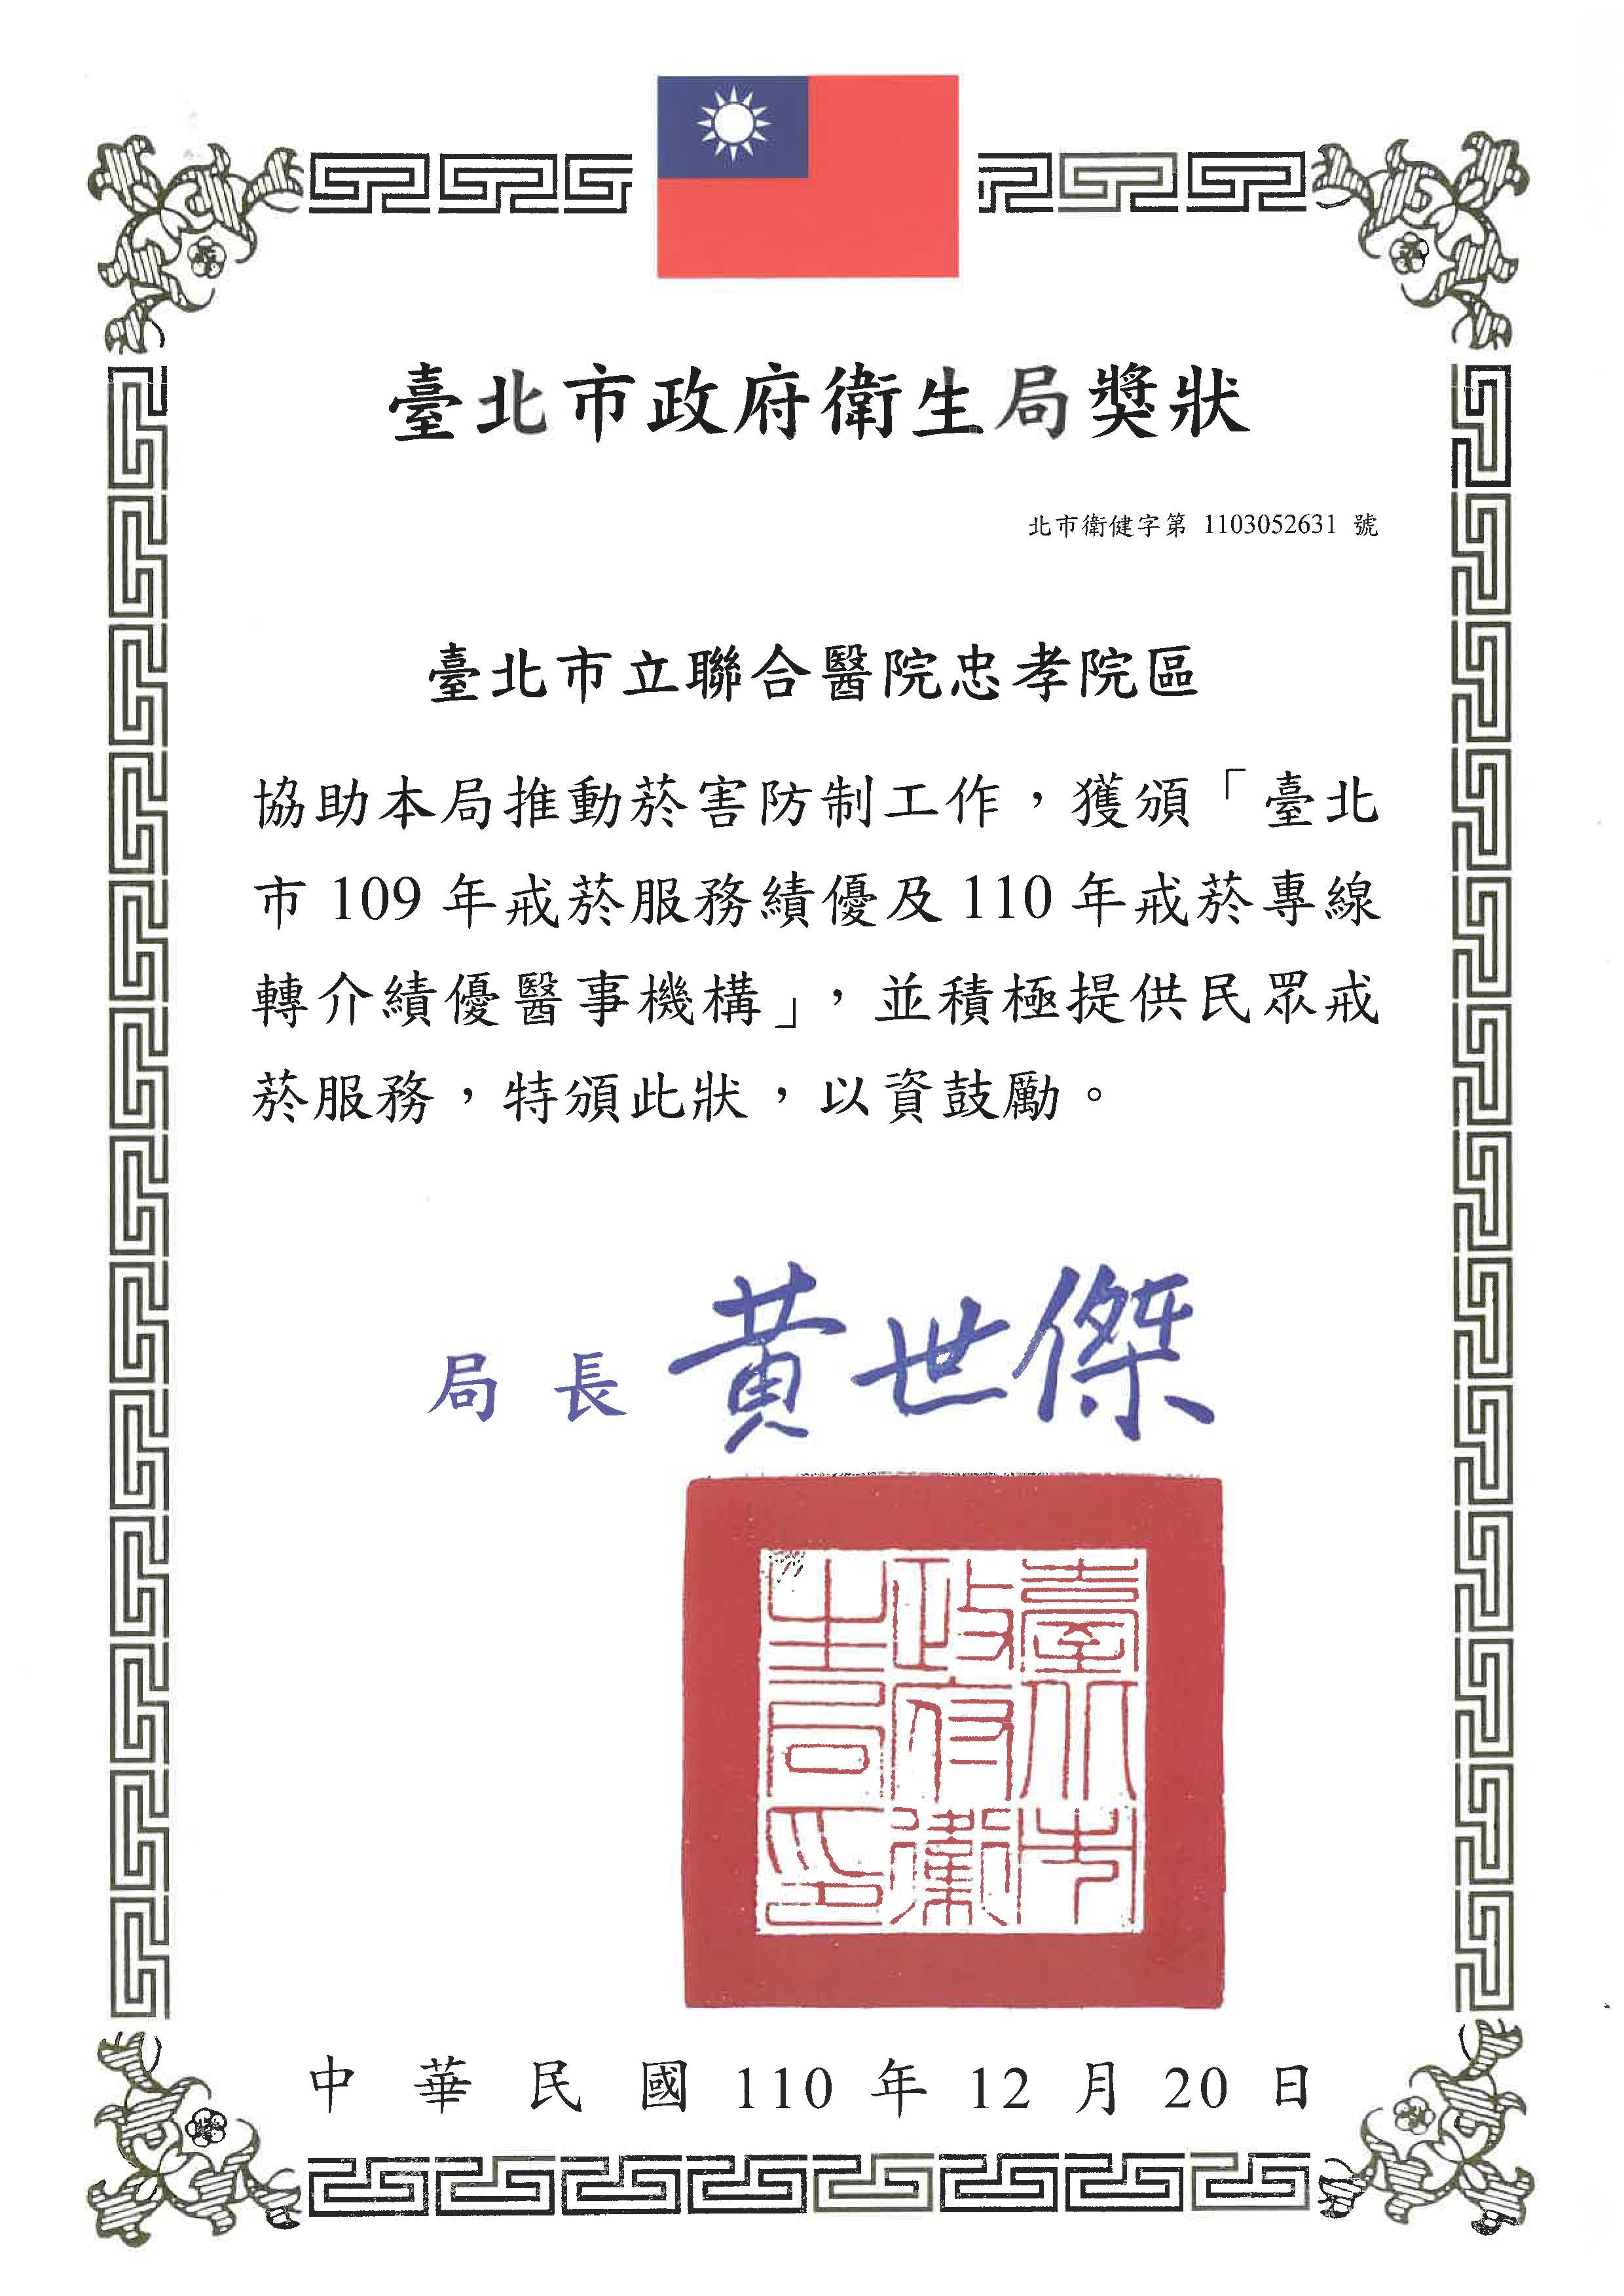 榮獲台北市政府衛生局頒發「109年戒菸服務績優及110年戒菸專線轉介績優醫事機構」1